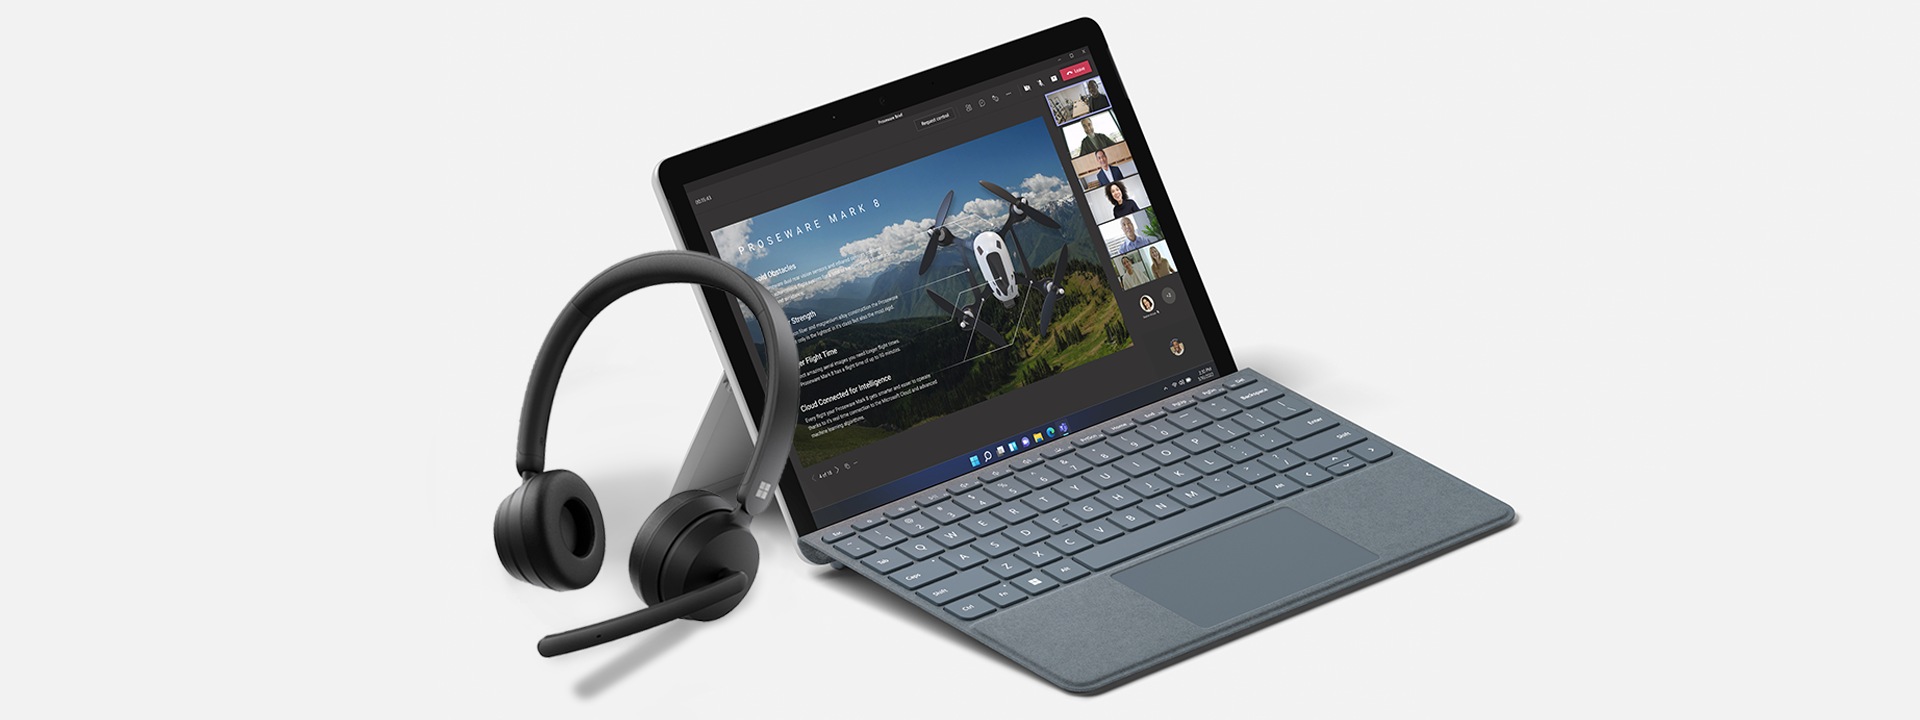 Immagine delle Cuffie wireless moderne Microsoft appoggiate a un dispositivo Surface